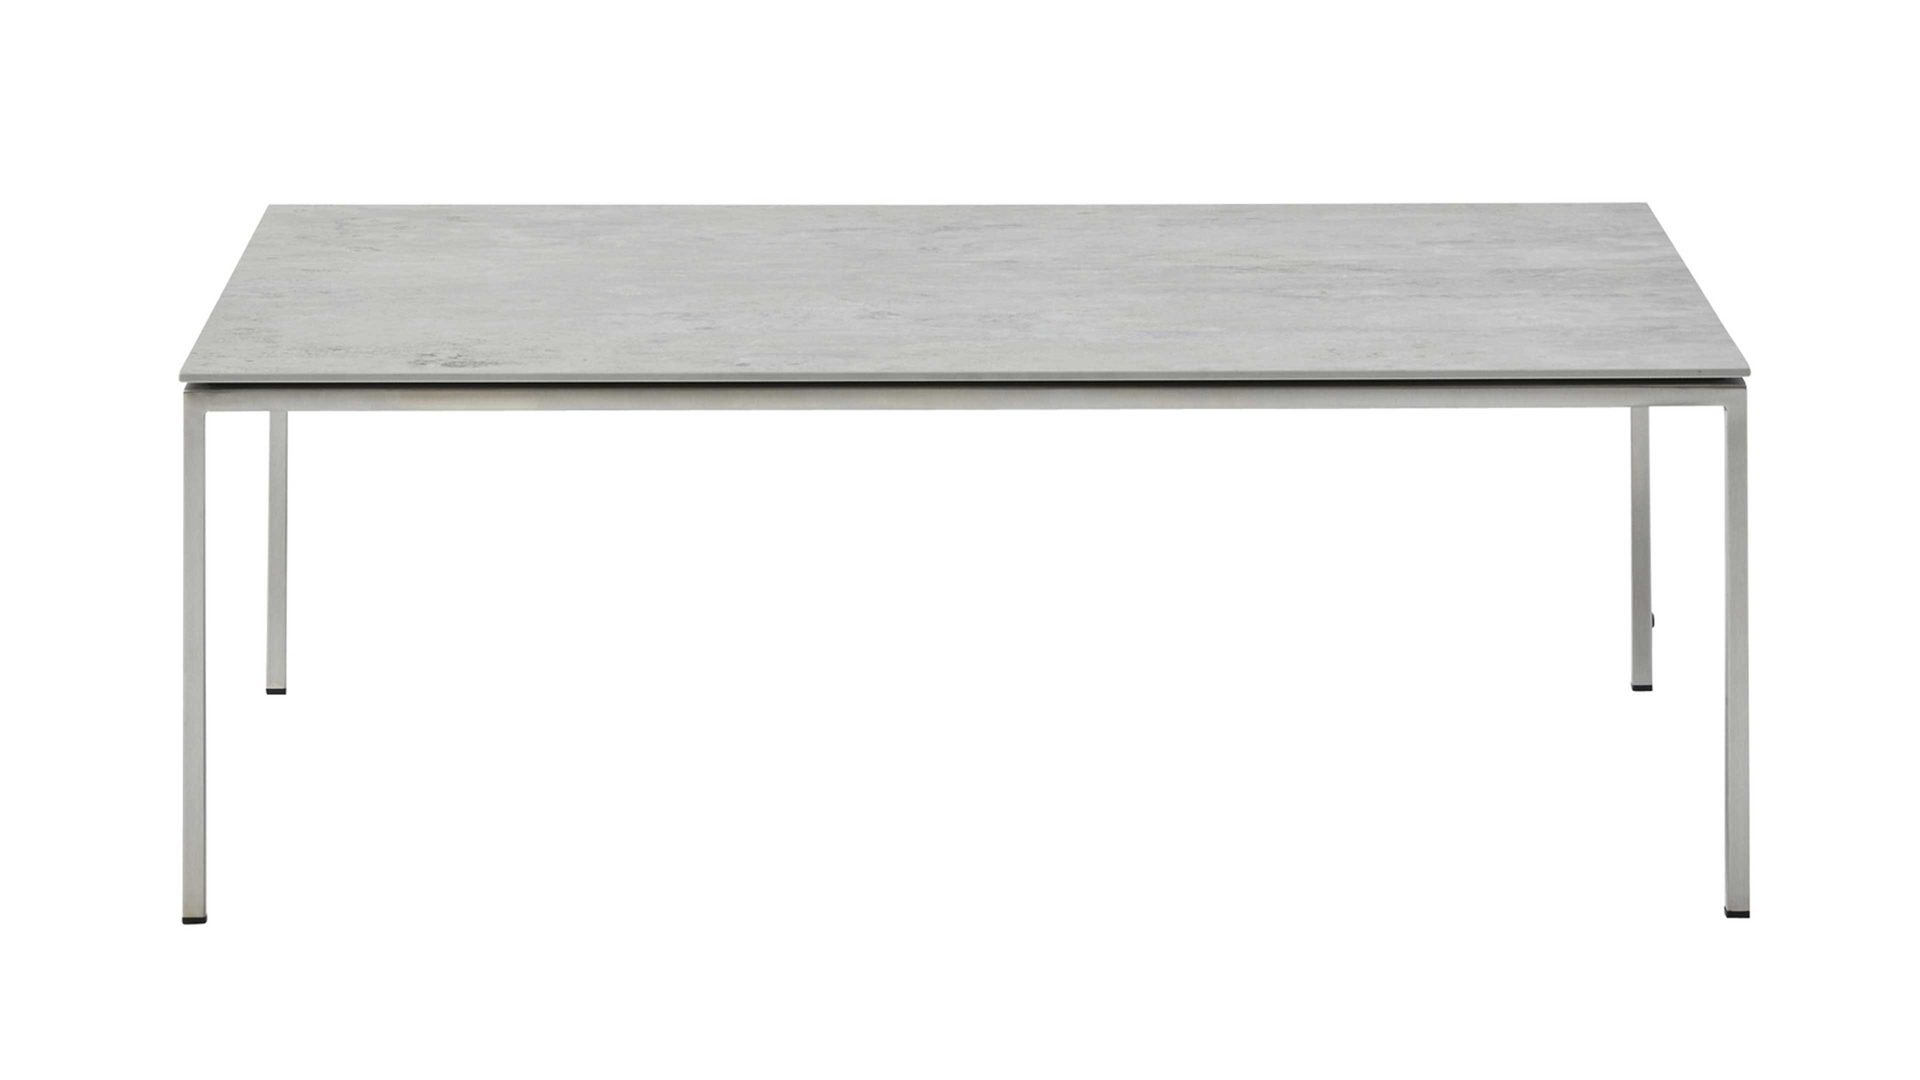 Couchtisch Interliving aus Keramik in Hellgrau Interliving Couchtisch Serie 6201 bzw. Wohnzimmertisch ca. 100 x 35 x 60 cm - Beton & Edelstahl